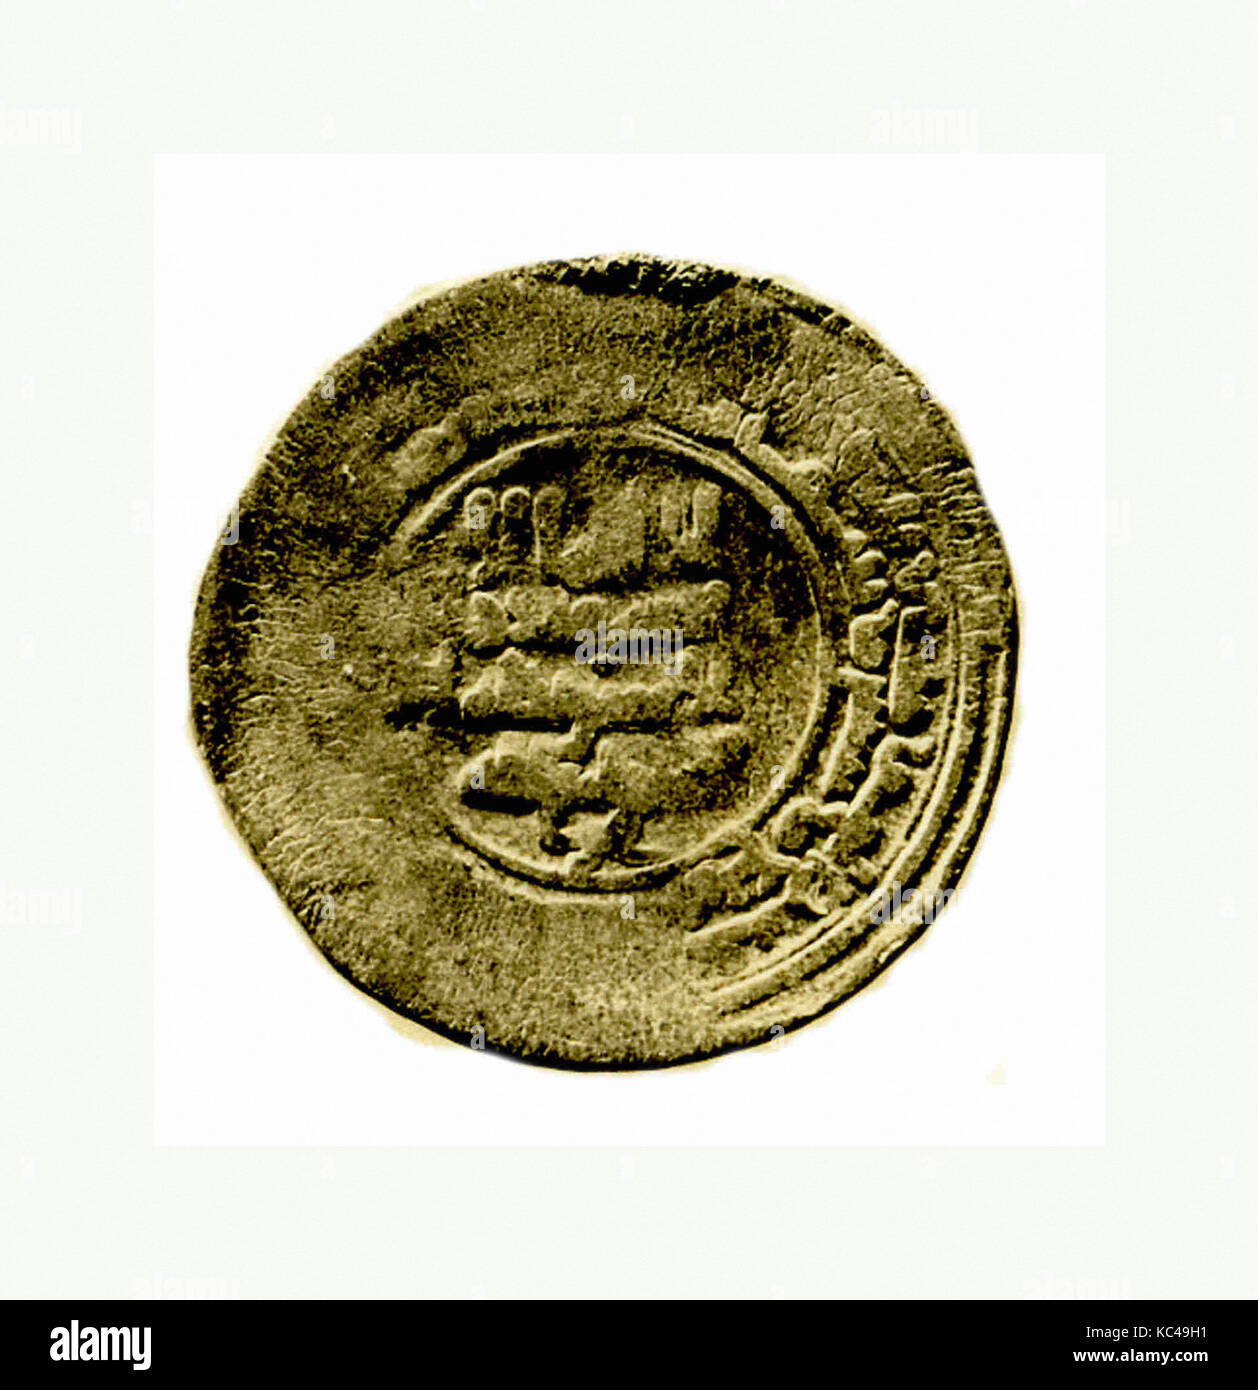 Münze, vom A.H. 364/A.D. 974, aus dem Iran, Nishapur, Silber, Münzen Stockfoto